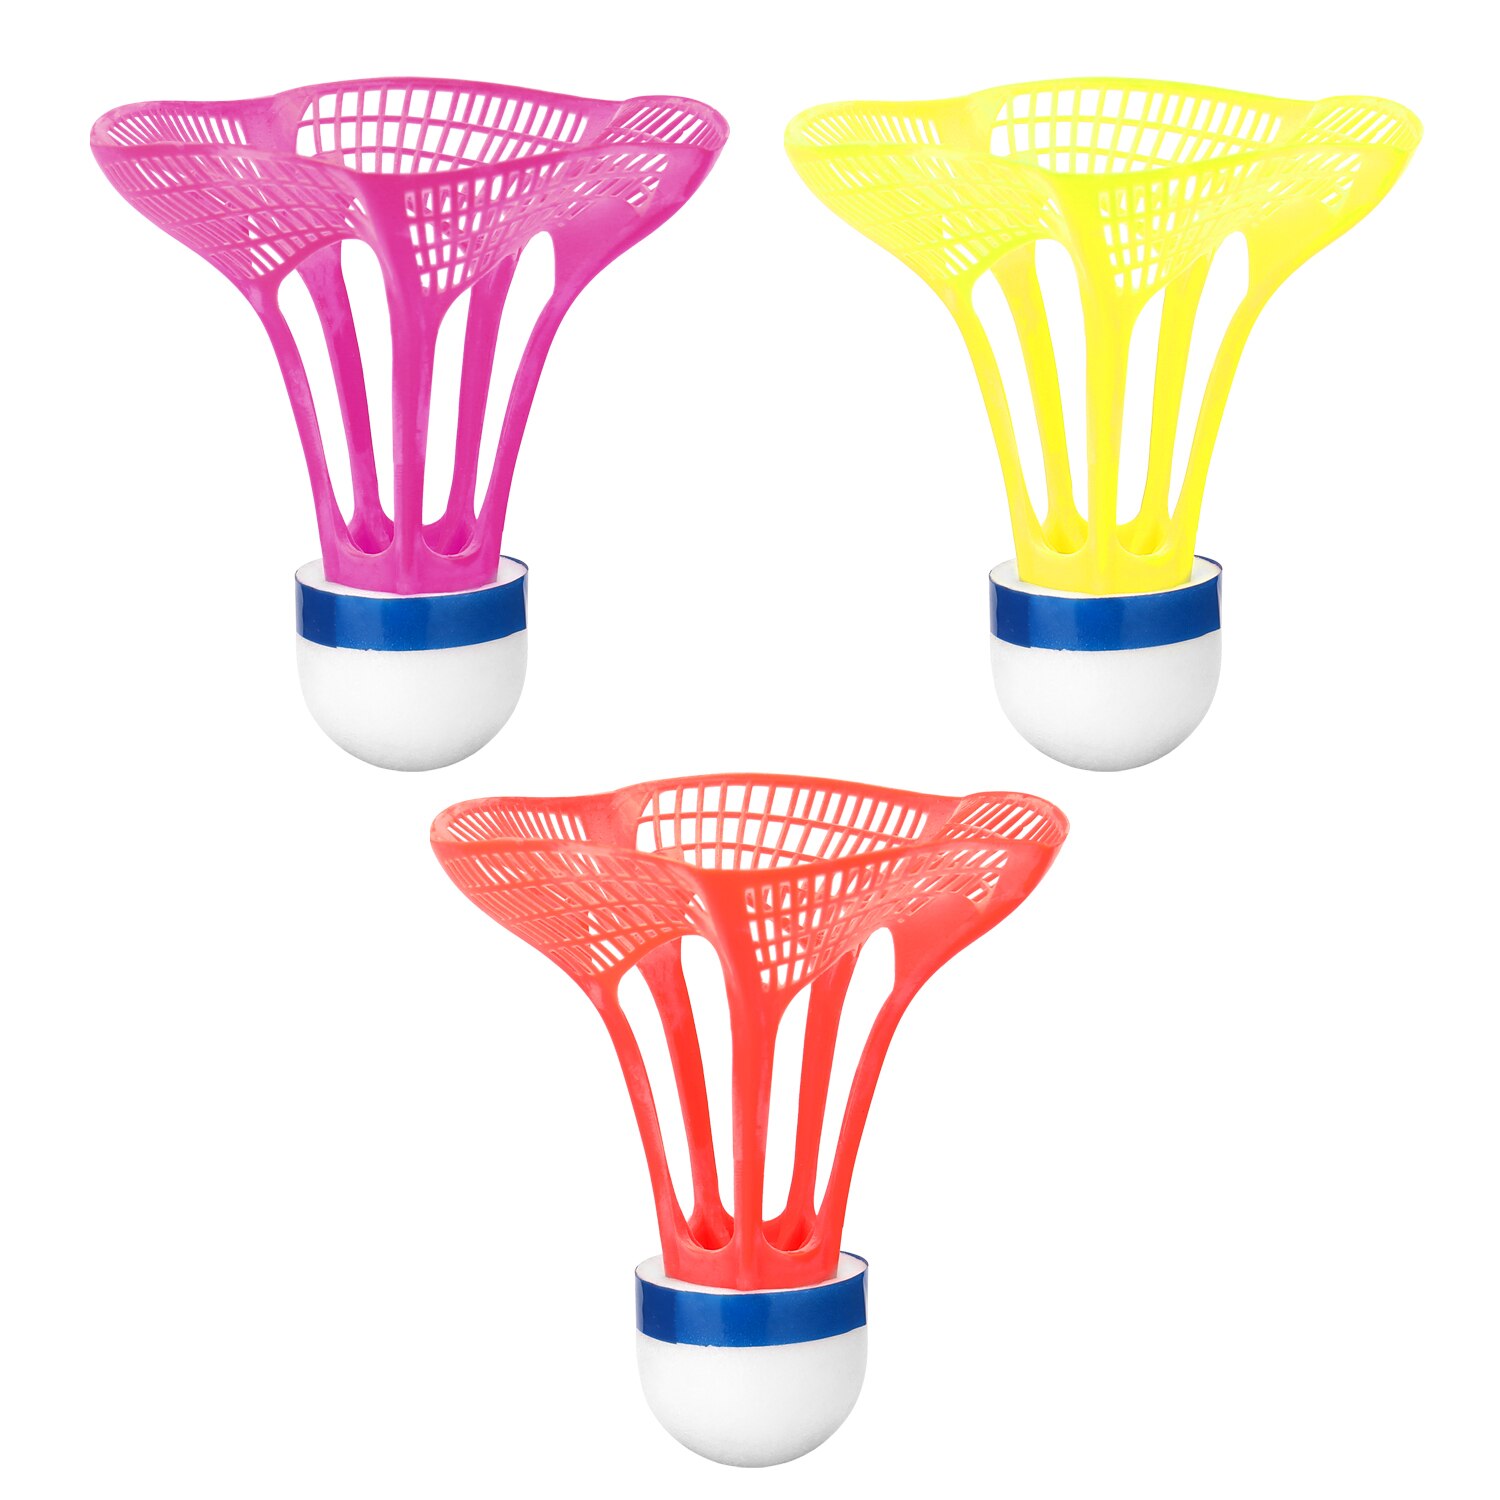 3 stk. udendørs badmintonbold plast airshuttle nylonbold sportstræning træning fjederbuefugle modstand mod vind